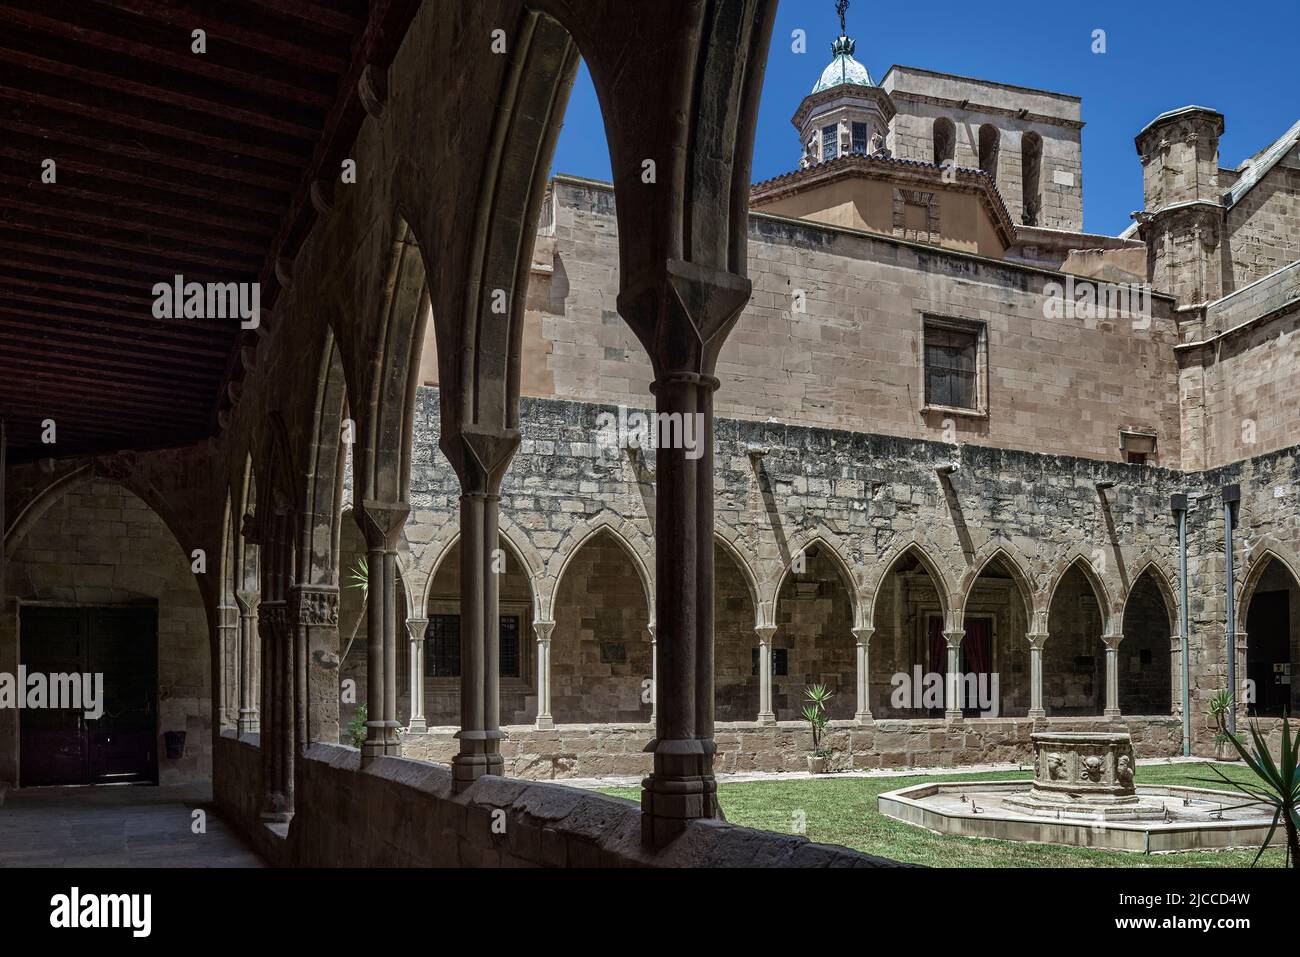 Chiostro gotico catalano interno della basilica cattedrale di Santa María de Tortosa del 14th secolo, provincia di Tarragona, Catalogna, Spagna, Europa Foto Stock